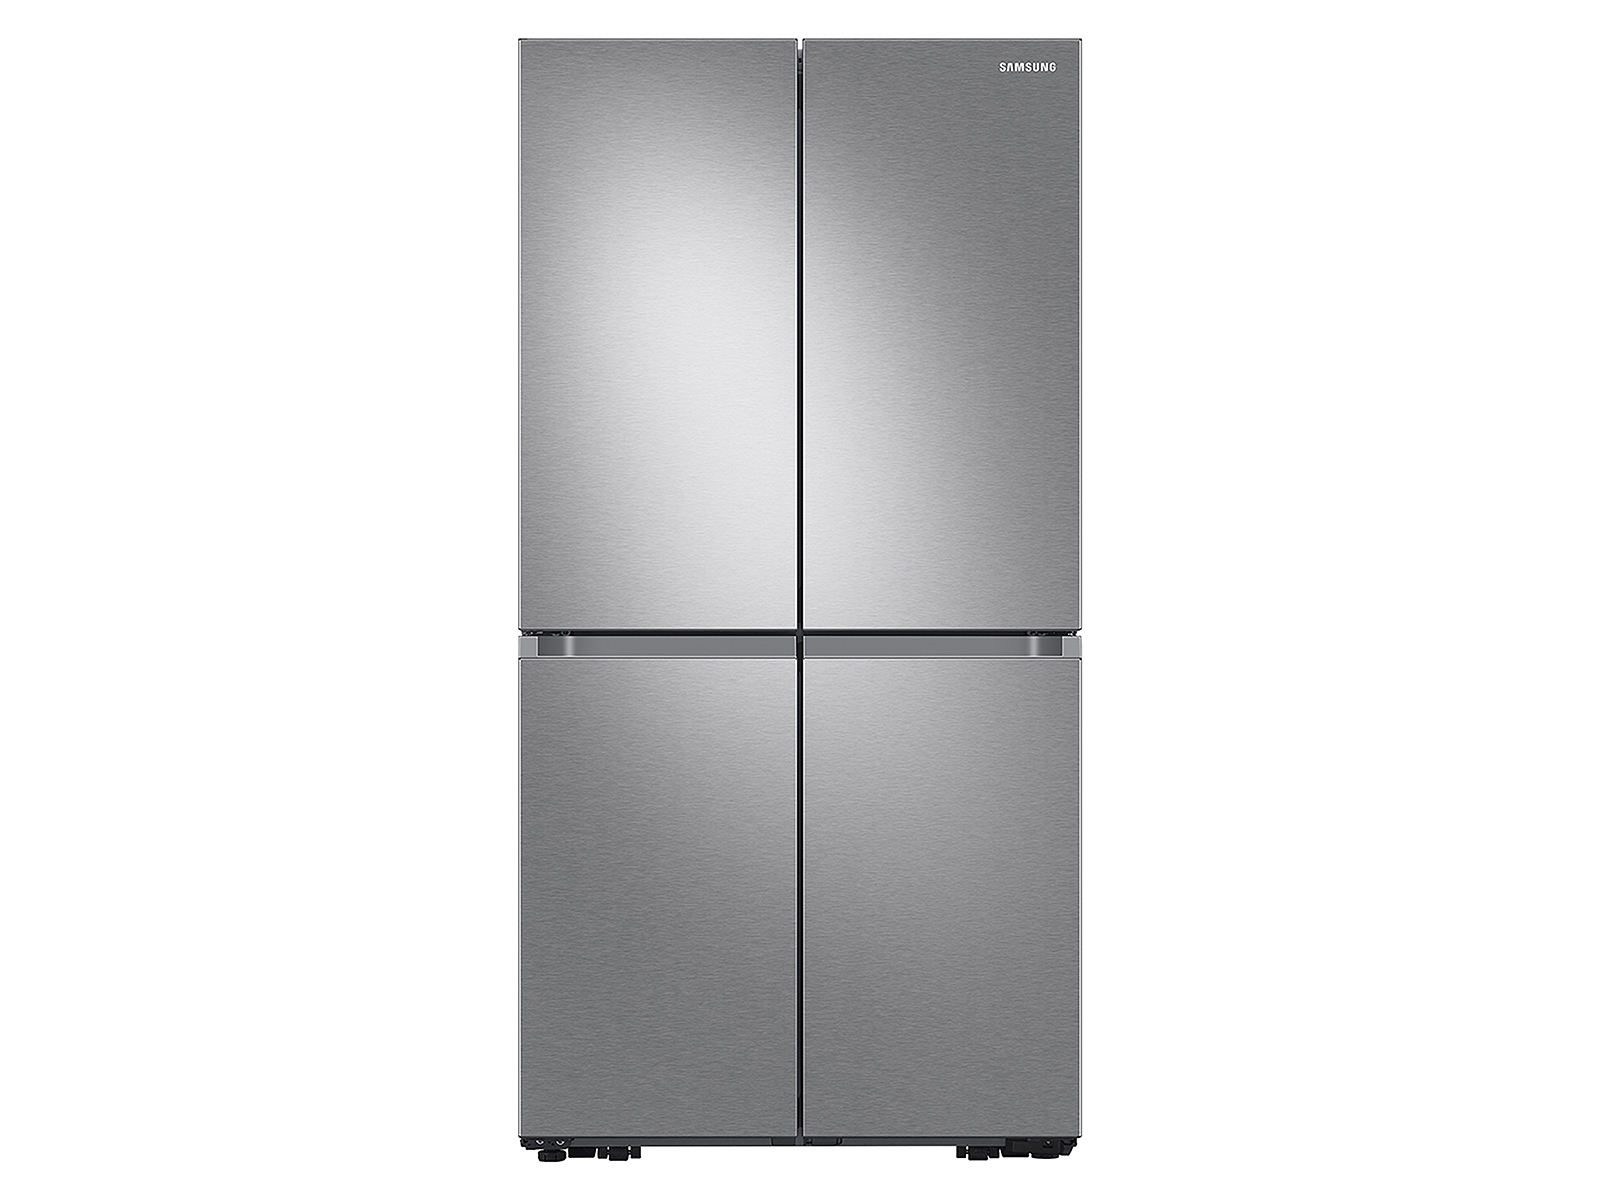 Photos - Fridge Samsung 23 cu. ft. Smart Counter Depth 4-Door Flex™ Refrigerator with Beve 